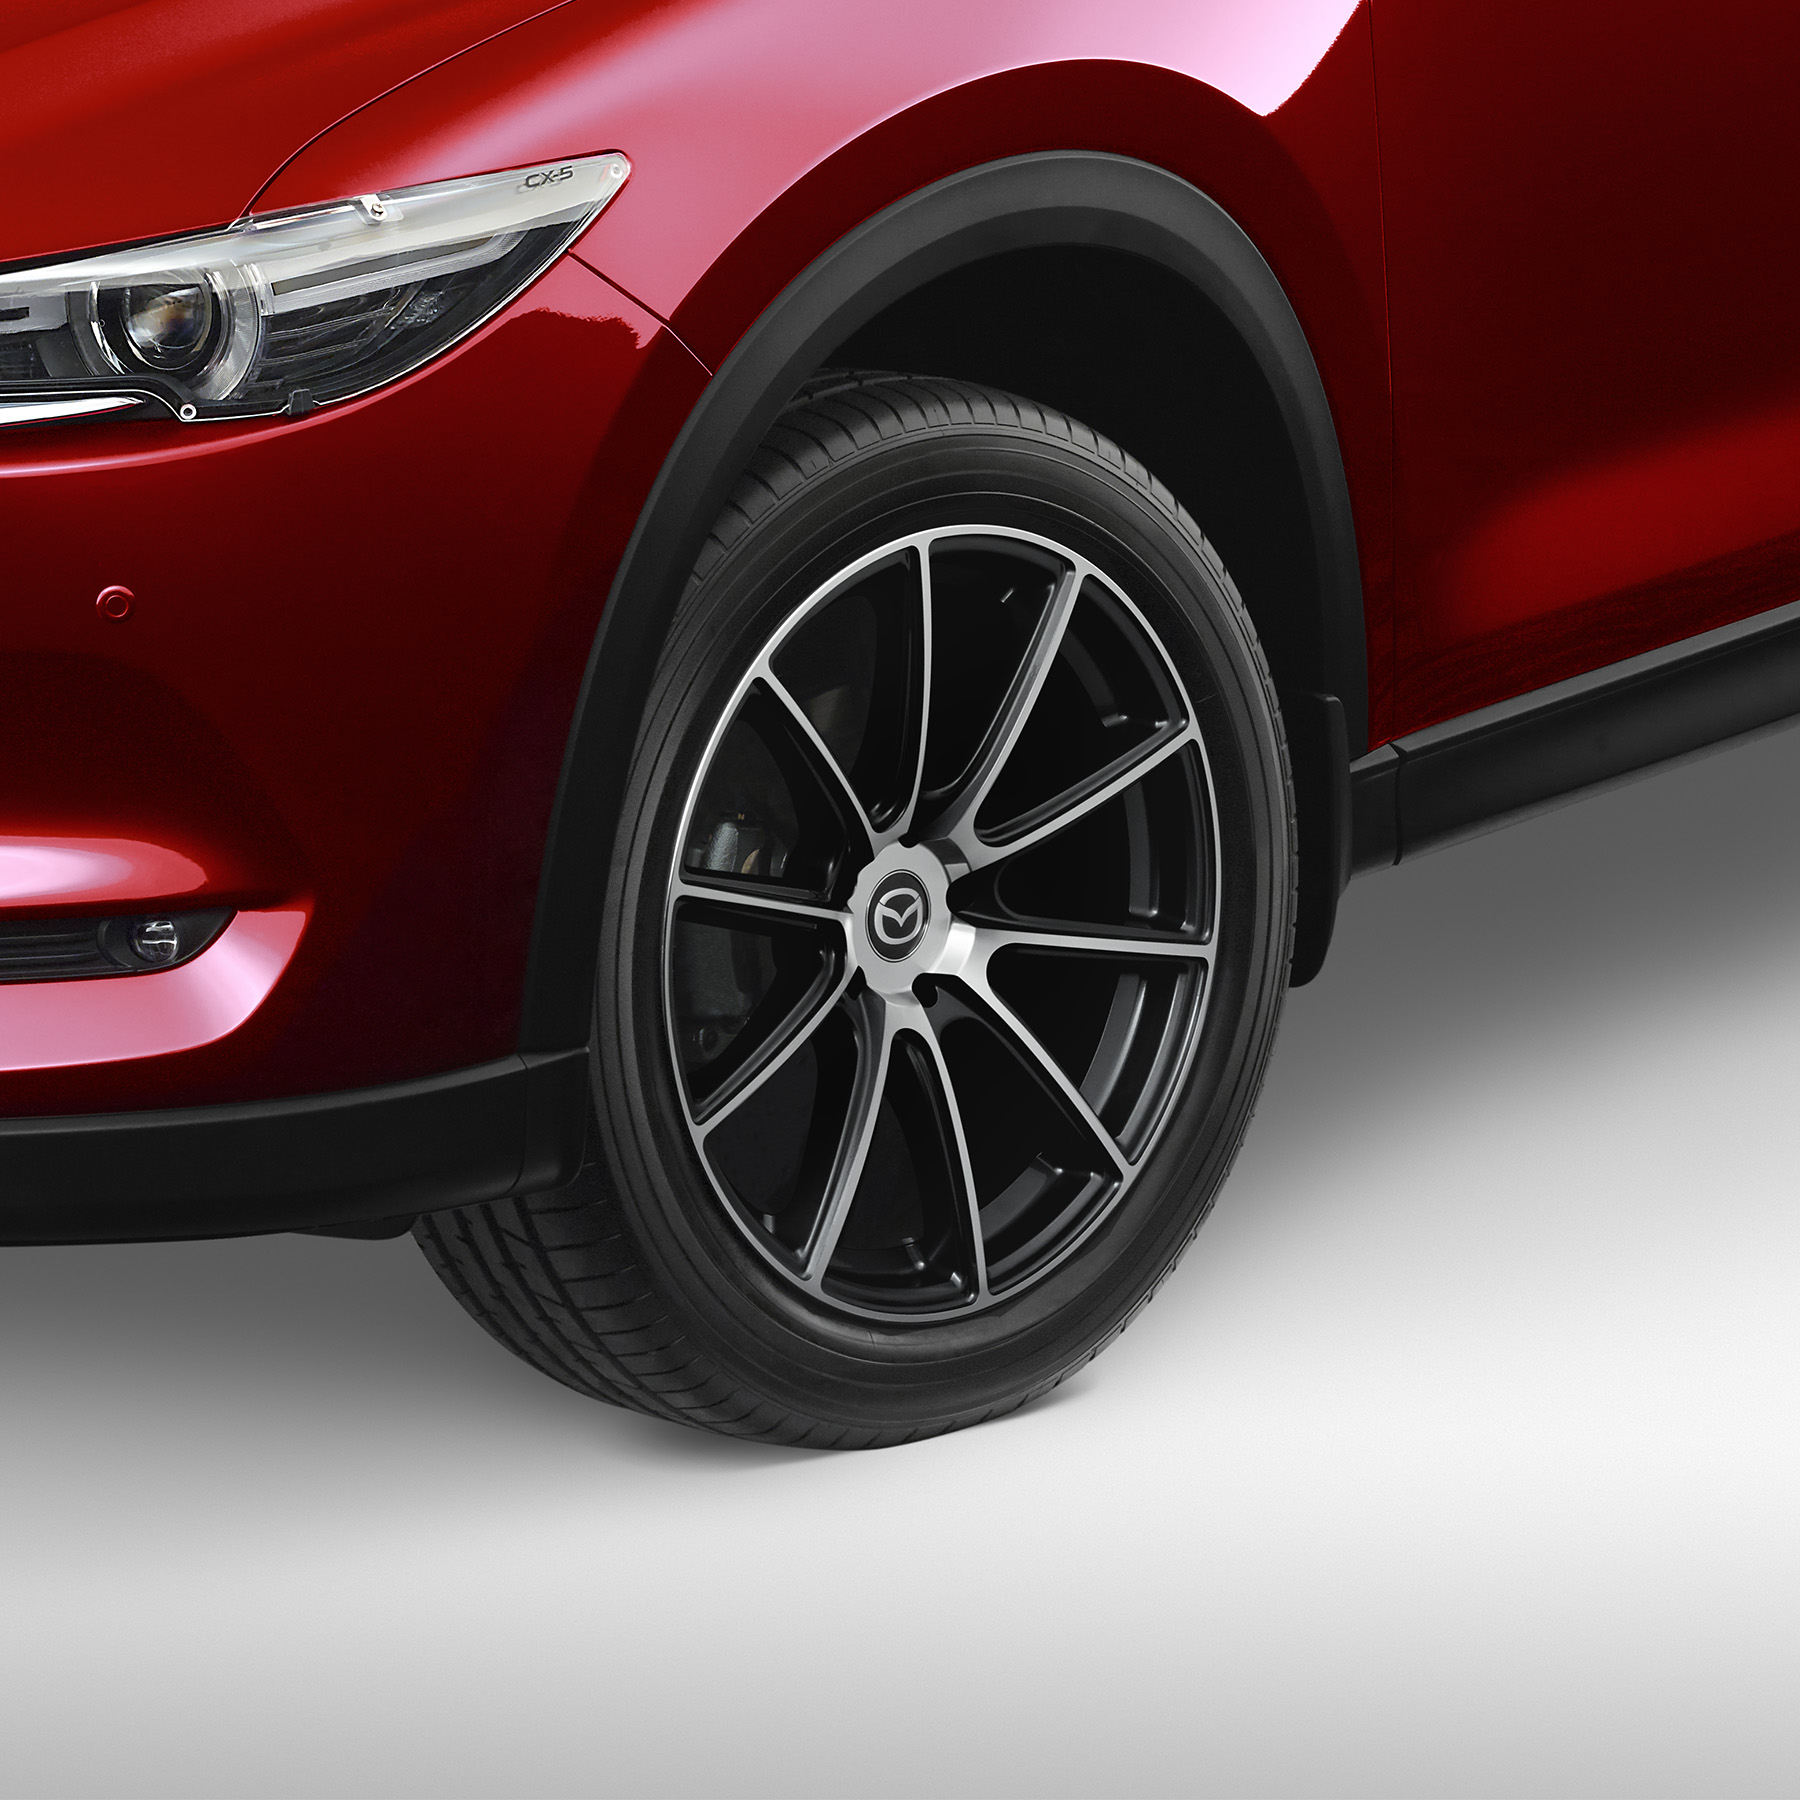 Misutonida Frontbügel, Seitenstufen und Zubehör für Mazda CX5 2015-2016